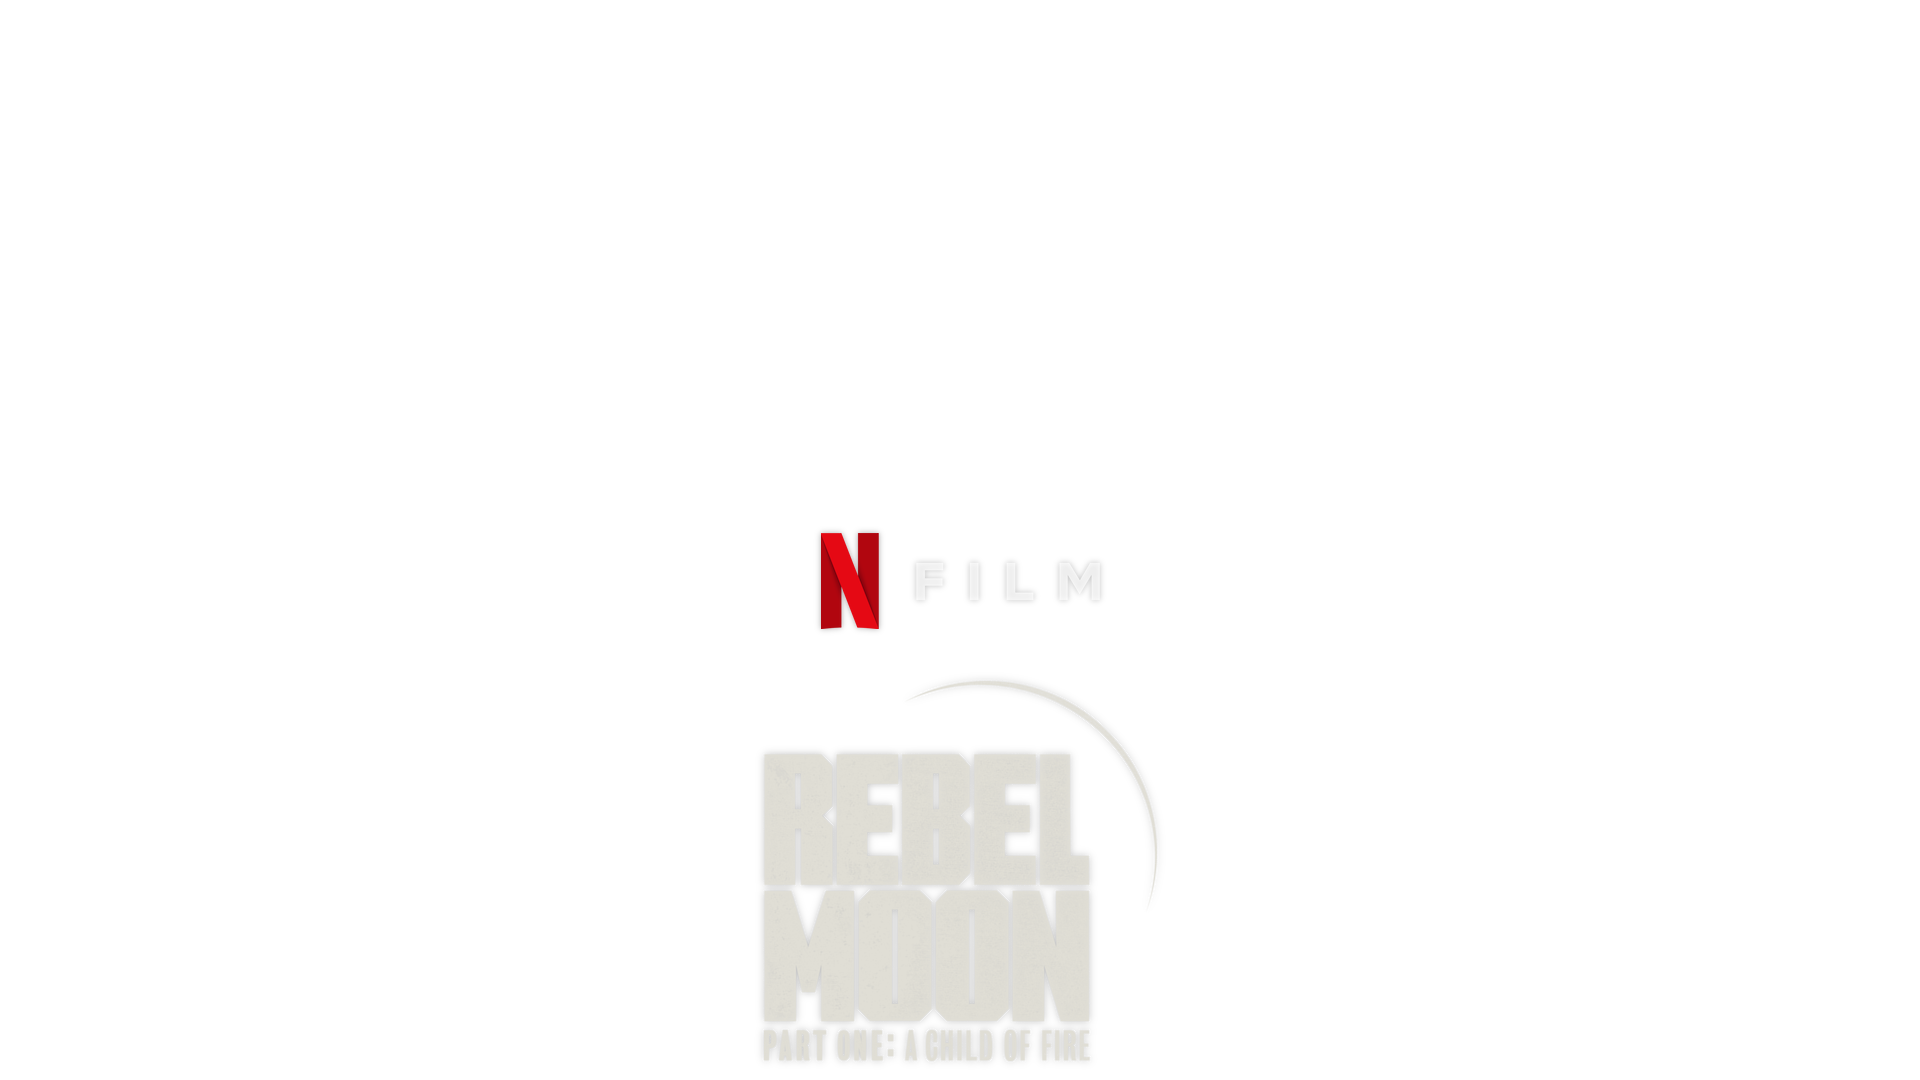 Rebel Moon: filme de Zack Snyder para a Netflix será dividido em duas partes